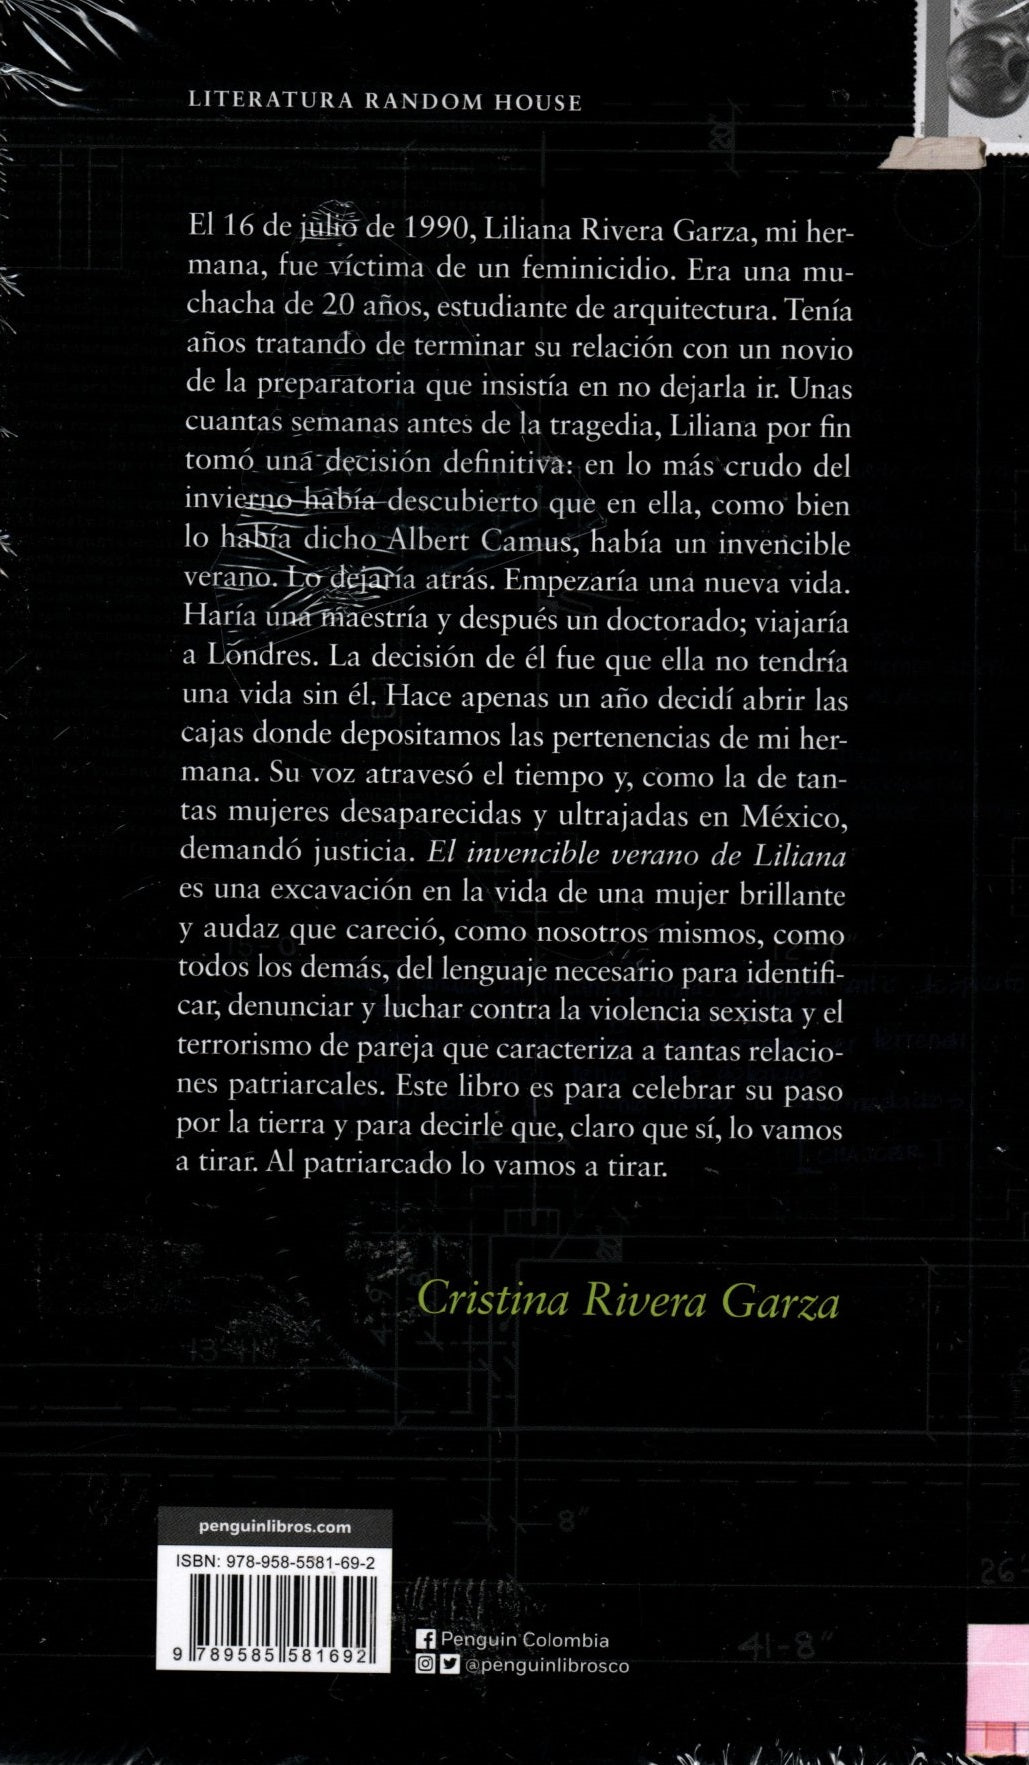 Libro Cristina Rivera Garza - El Invencible Verano De Liliana